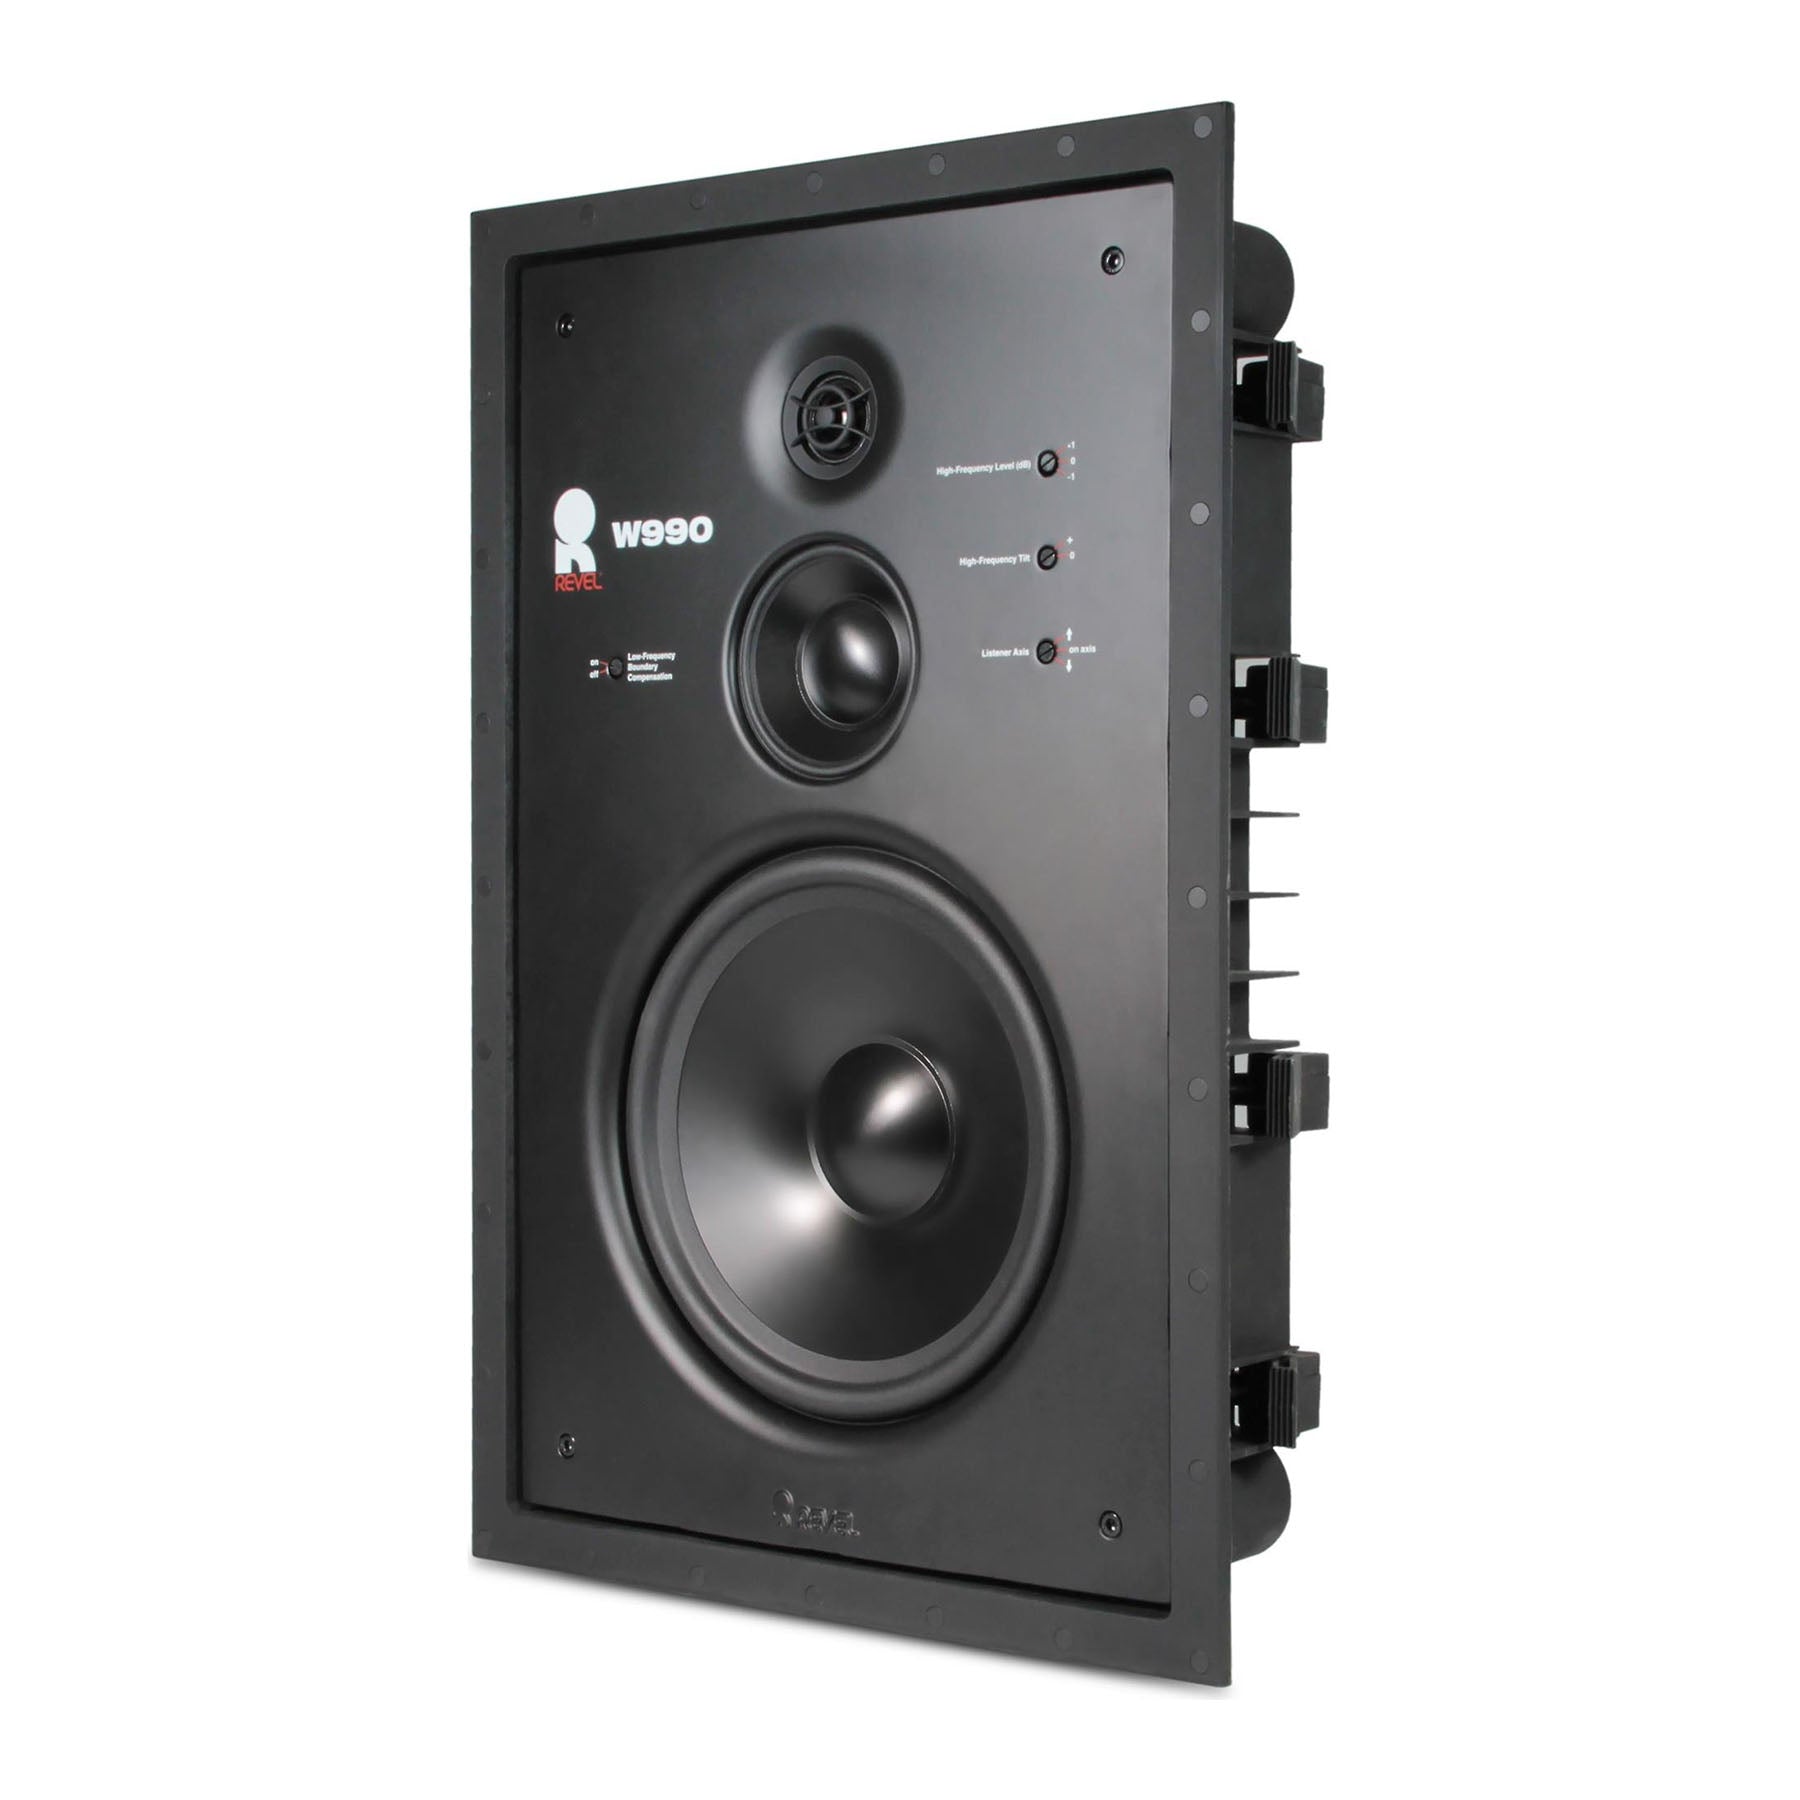 Revel W990 9" In-Wall Loudspeaker